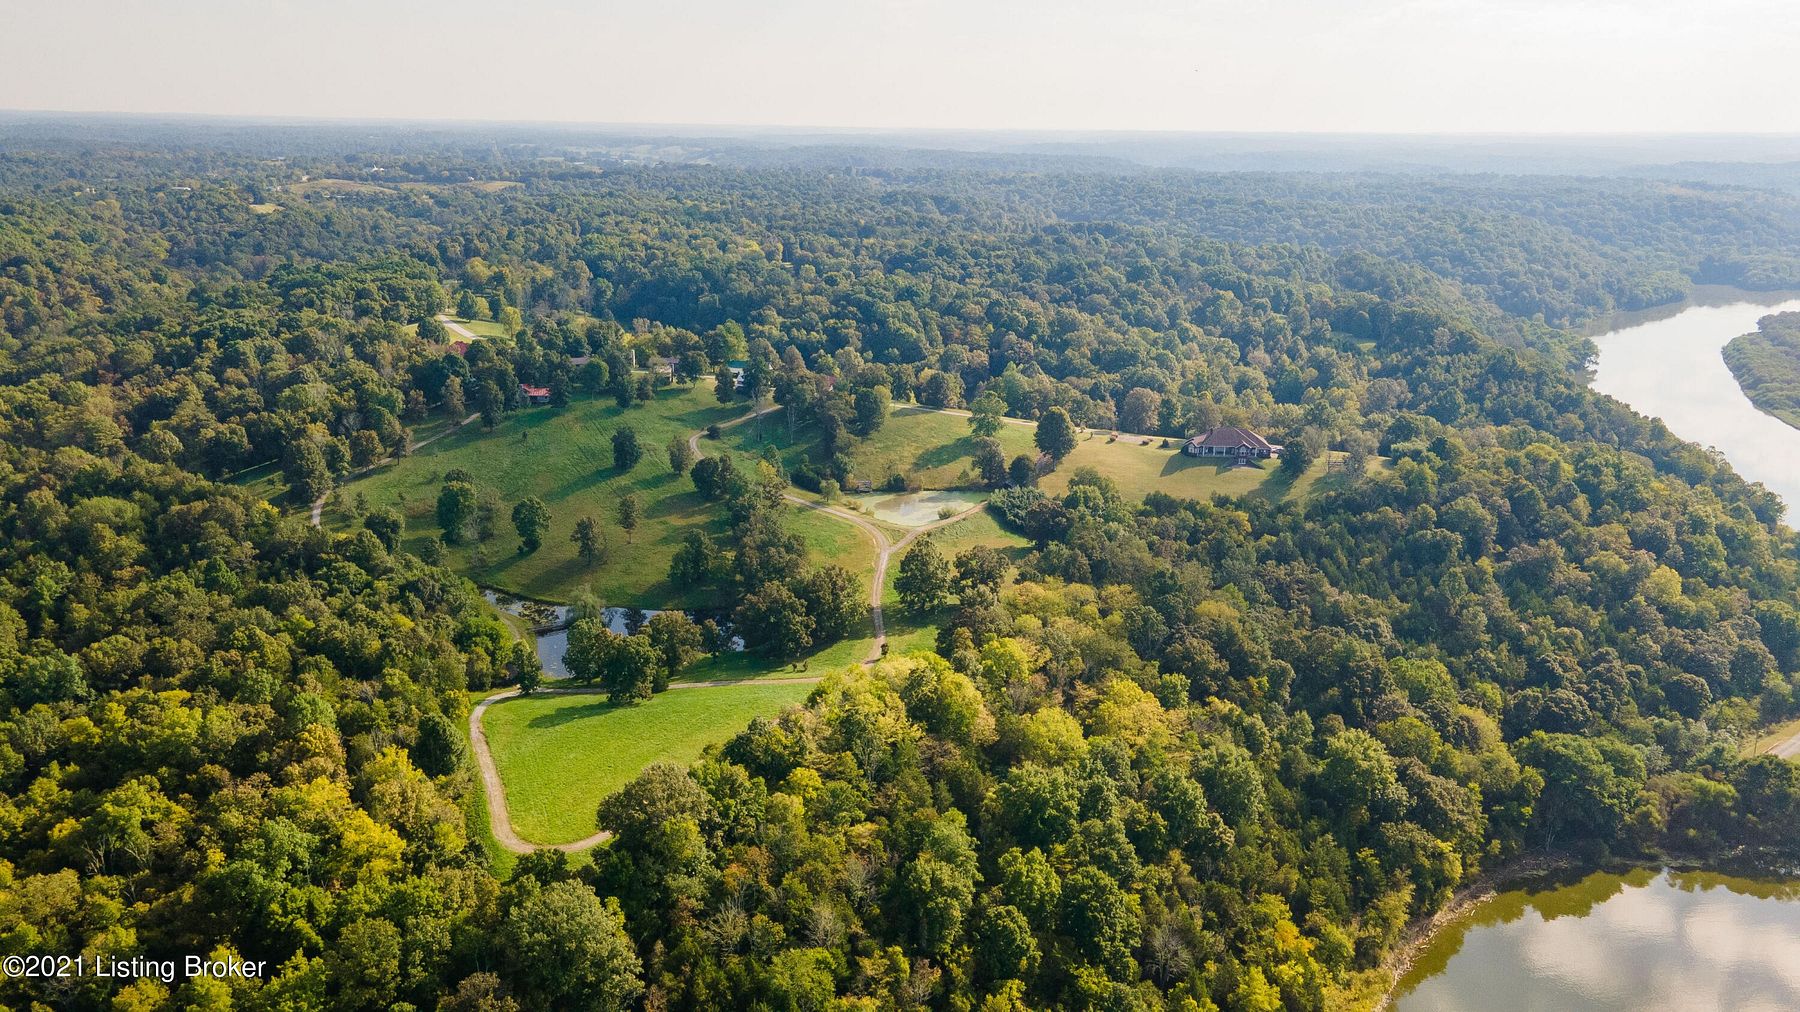 63 Acres of Mixed-Use Land & Home Mount Eden, Kentucky, KY